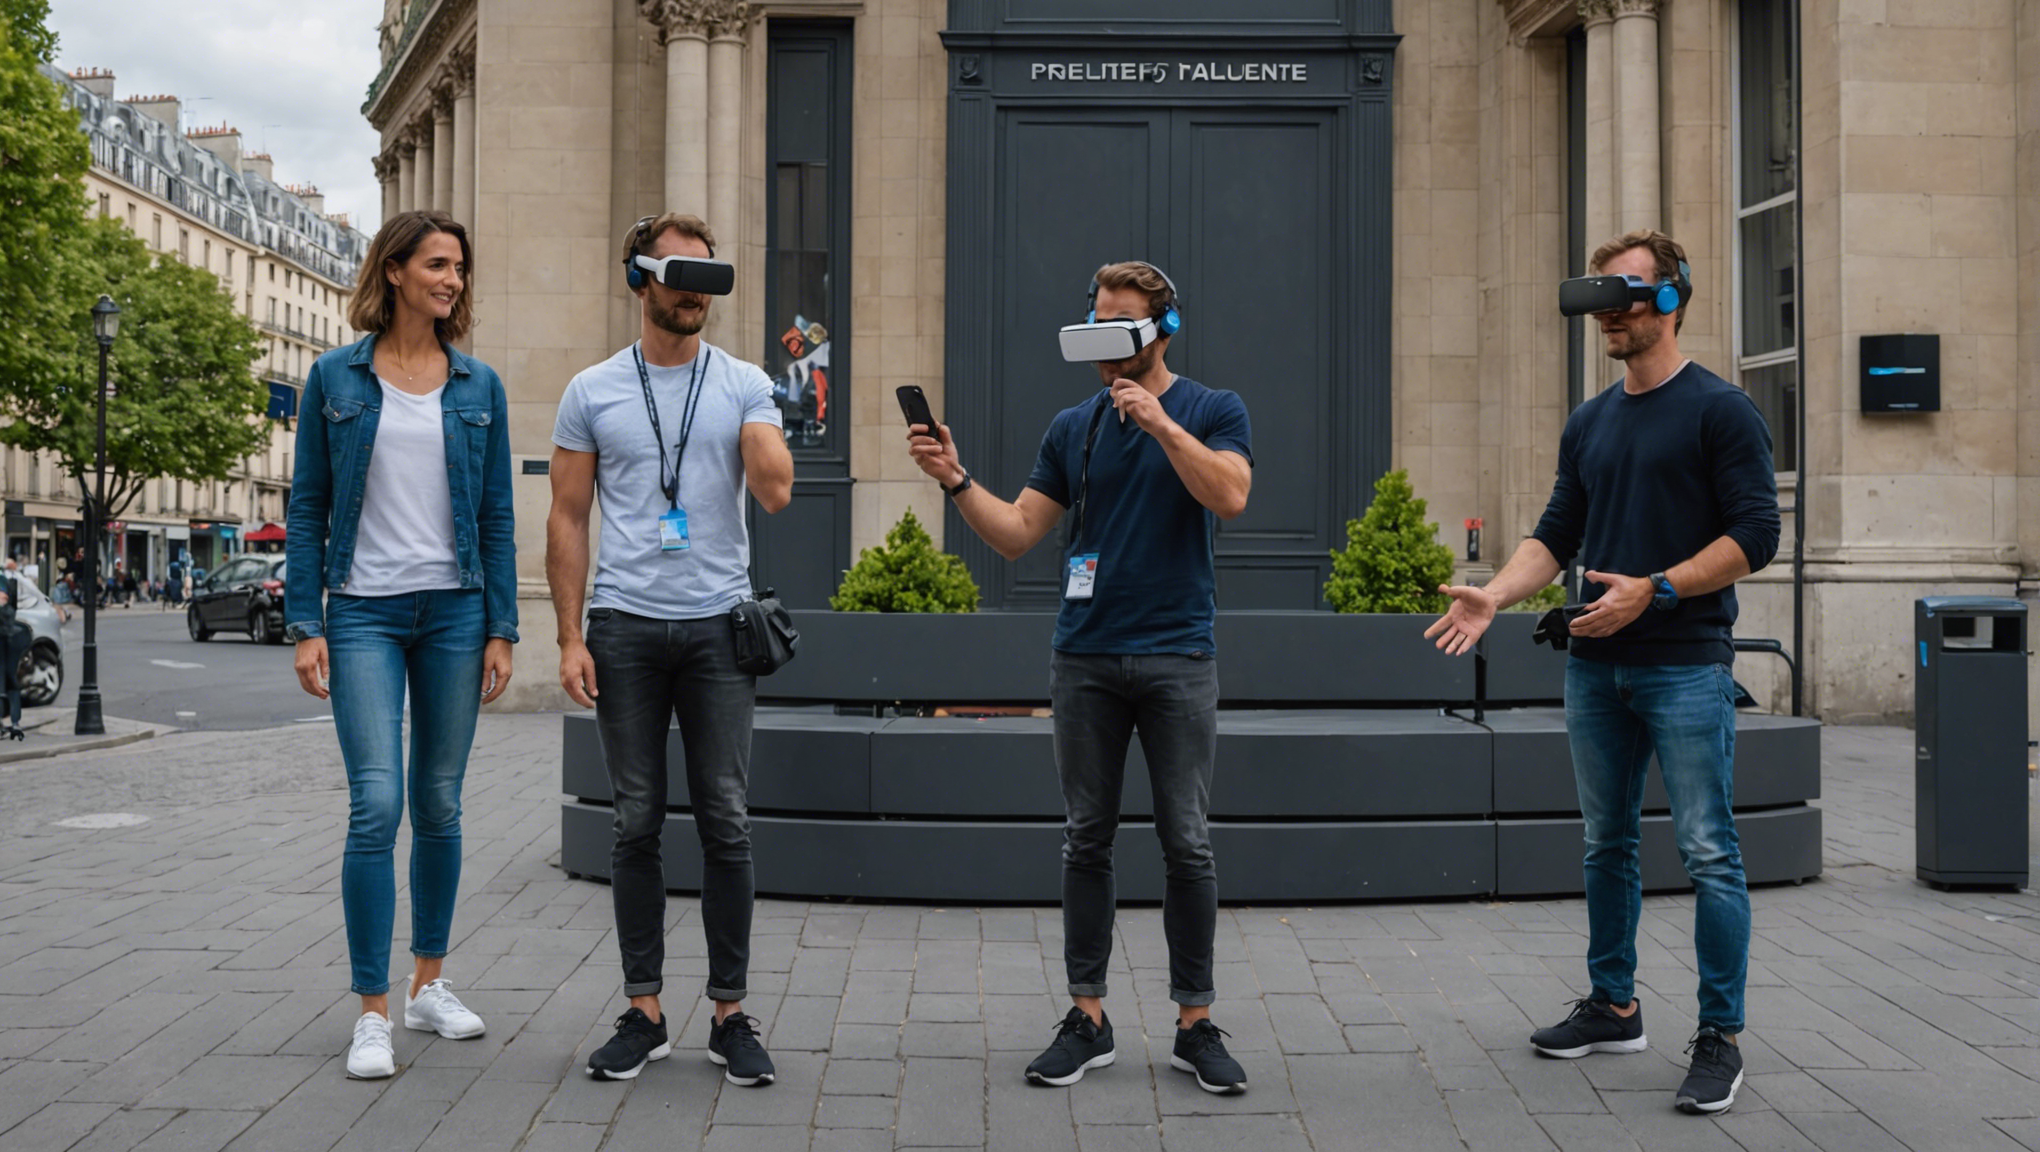 transformez vos réunions parisiennes avec notre simulateur de réalité virtuelle en location et offrez une expérience unique à vos participants ! louez notre matériel dès maintenant.